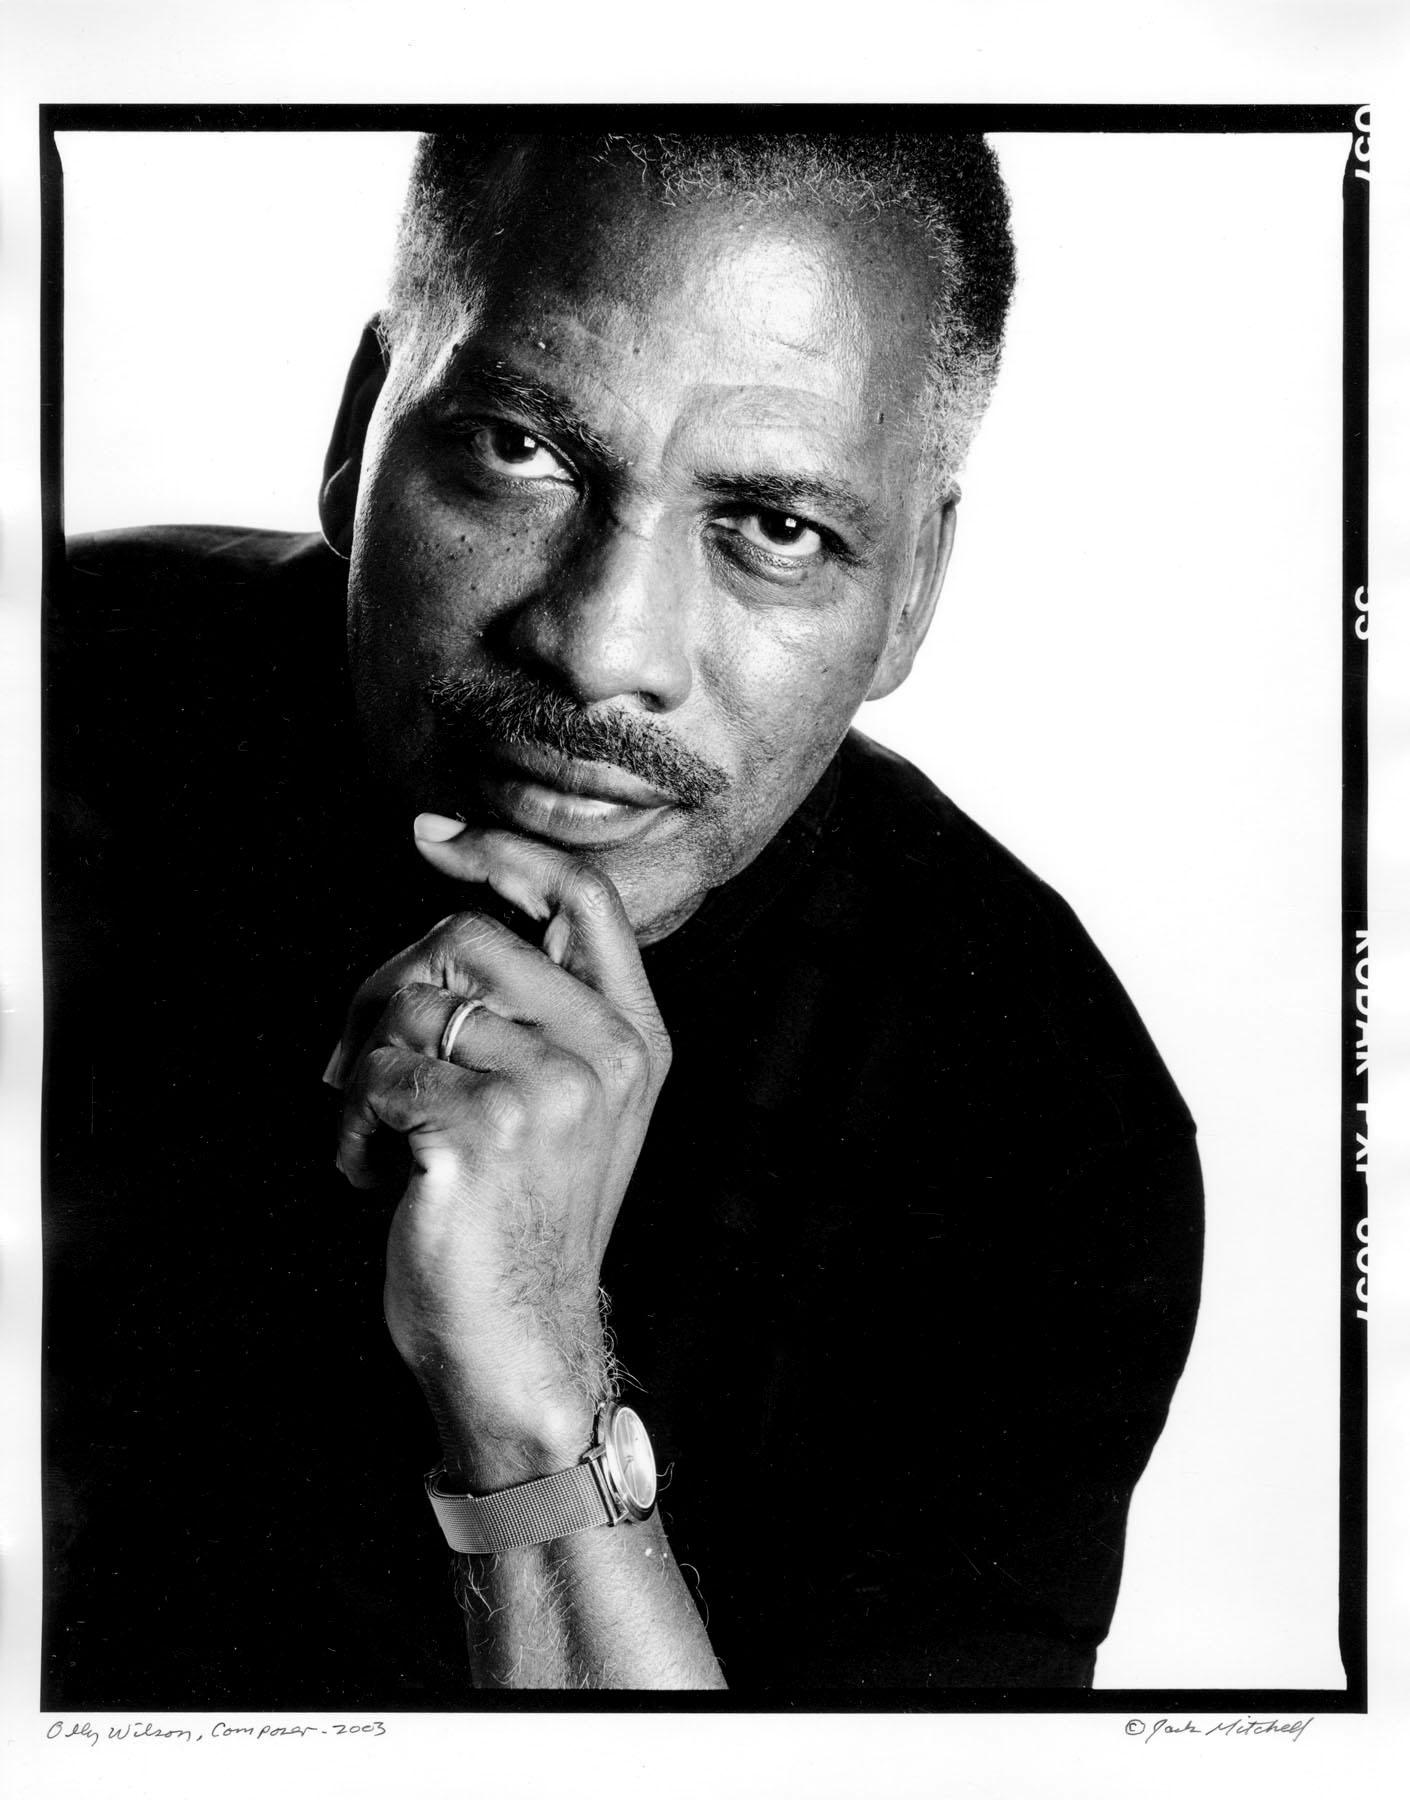 11 x 14" alte Silbergelatinefotografie des afroamerikanischen Komponisten Olly Wilson aus dem Jahr 2003. Signiert von Jack Mitchell auf der Vorderseite des Drucks. Kommt direkt aus dem Jack Mitchell Archiv mit einem Echtheitszertifikat.

Jack